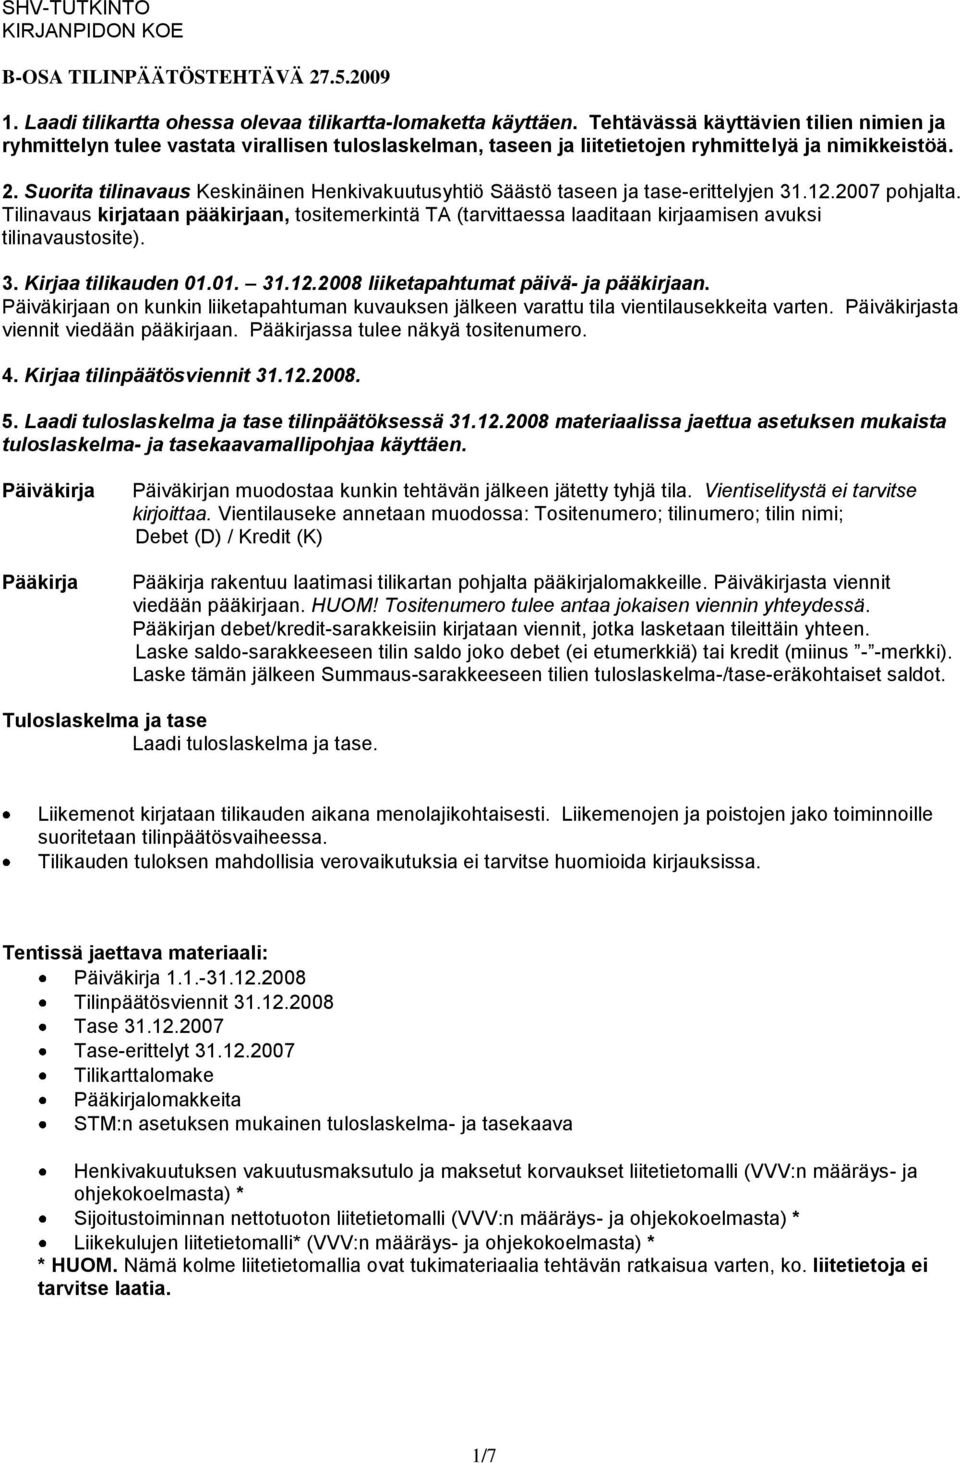 Suorita tilinavaus Keskinäinen Henkivakuutusyhtiö Säästö taseen ja tase-erittelyjen 31.12.2007 pohjalta.